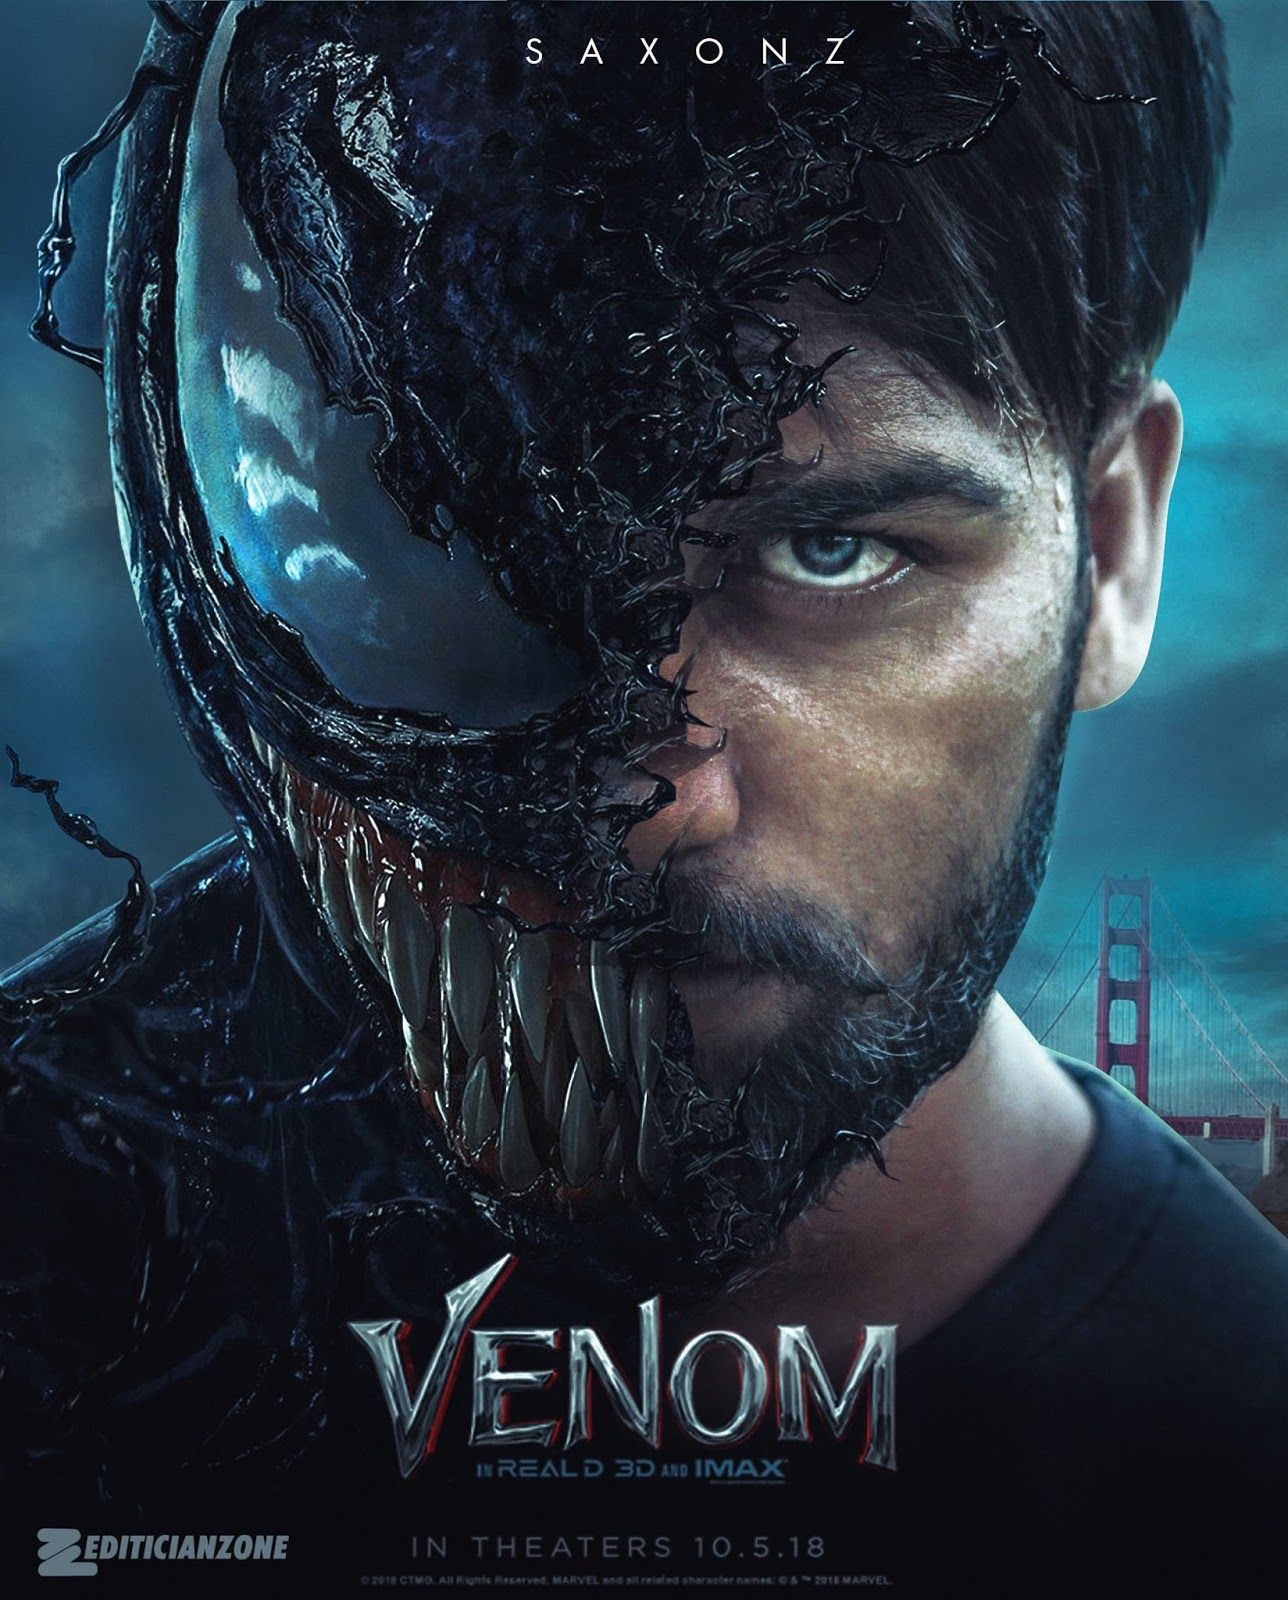 Venom Movie Background. TV SHOWS AIRING